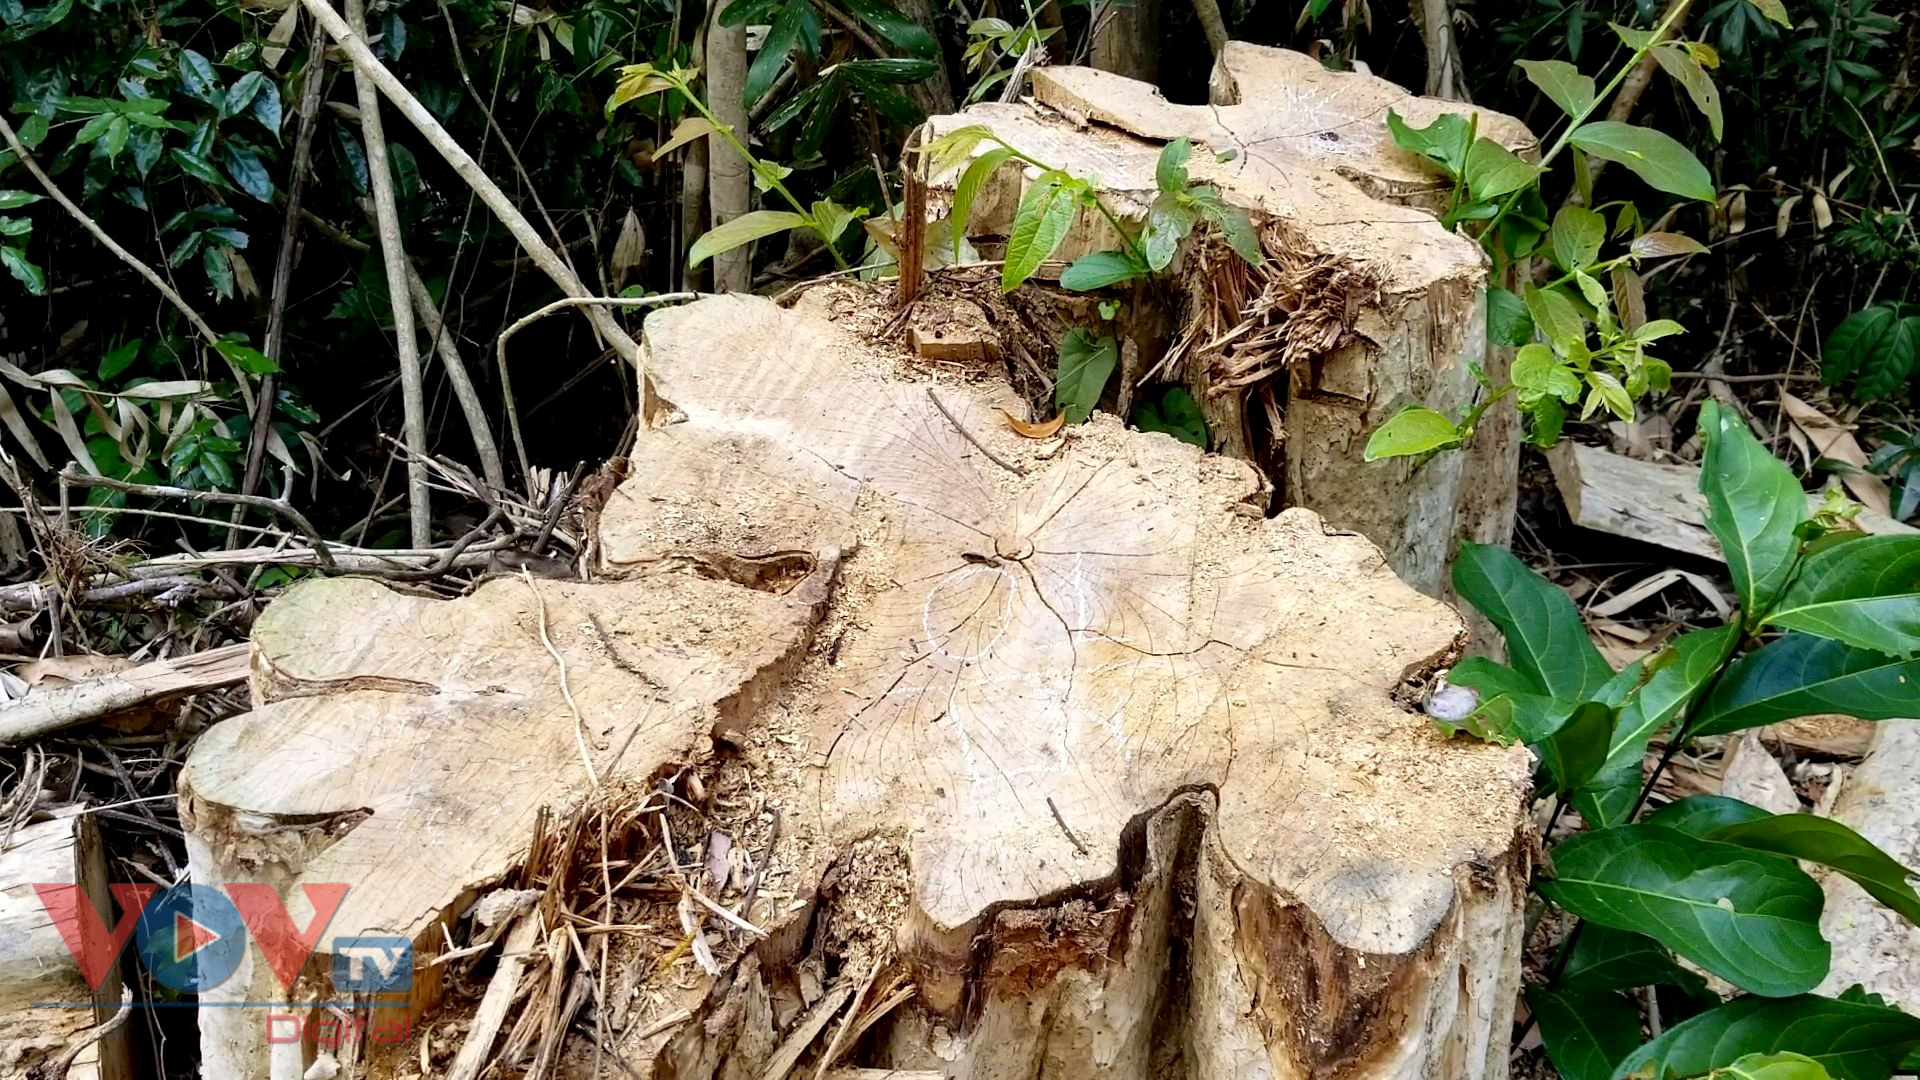 Thực tế, trong 3 tháng đầu năm 2021, cơ quan kiểm lâm tỉnh Gia Lai ghi nhận 96 vụ khai thác gỗ trái phép. Như vậy, trung bình mỗi ngày, Gia Lai phát hiện ít nhất 1 vụ